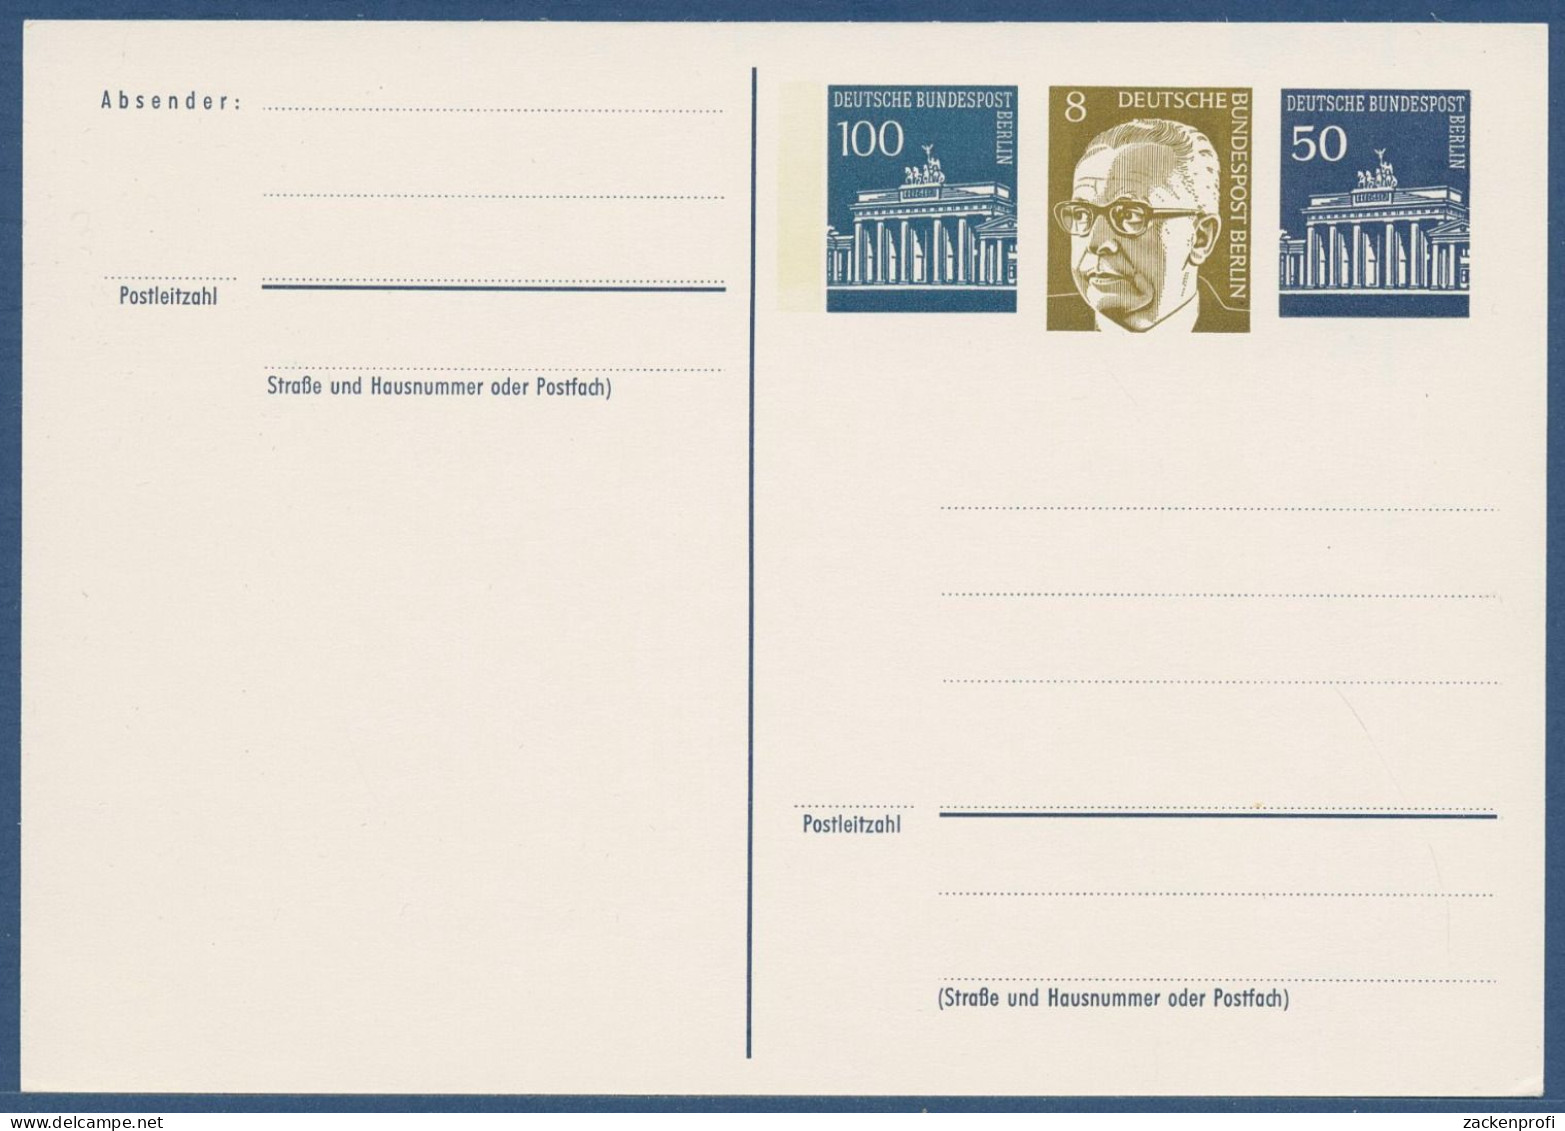 Berlin 1972 Heinemann BBT, Privatpostkarte PP 43/1 Ungebraucht (X41020) - Private Postcards - Mint